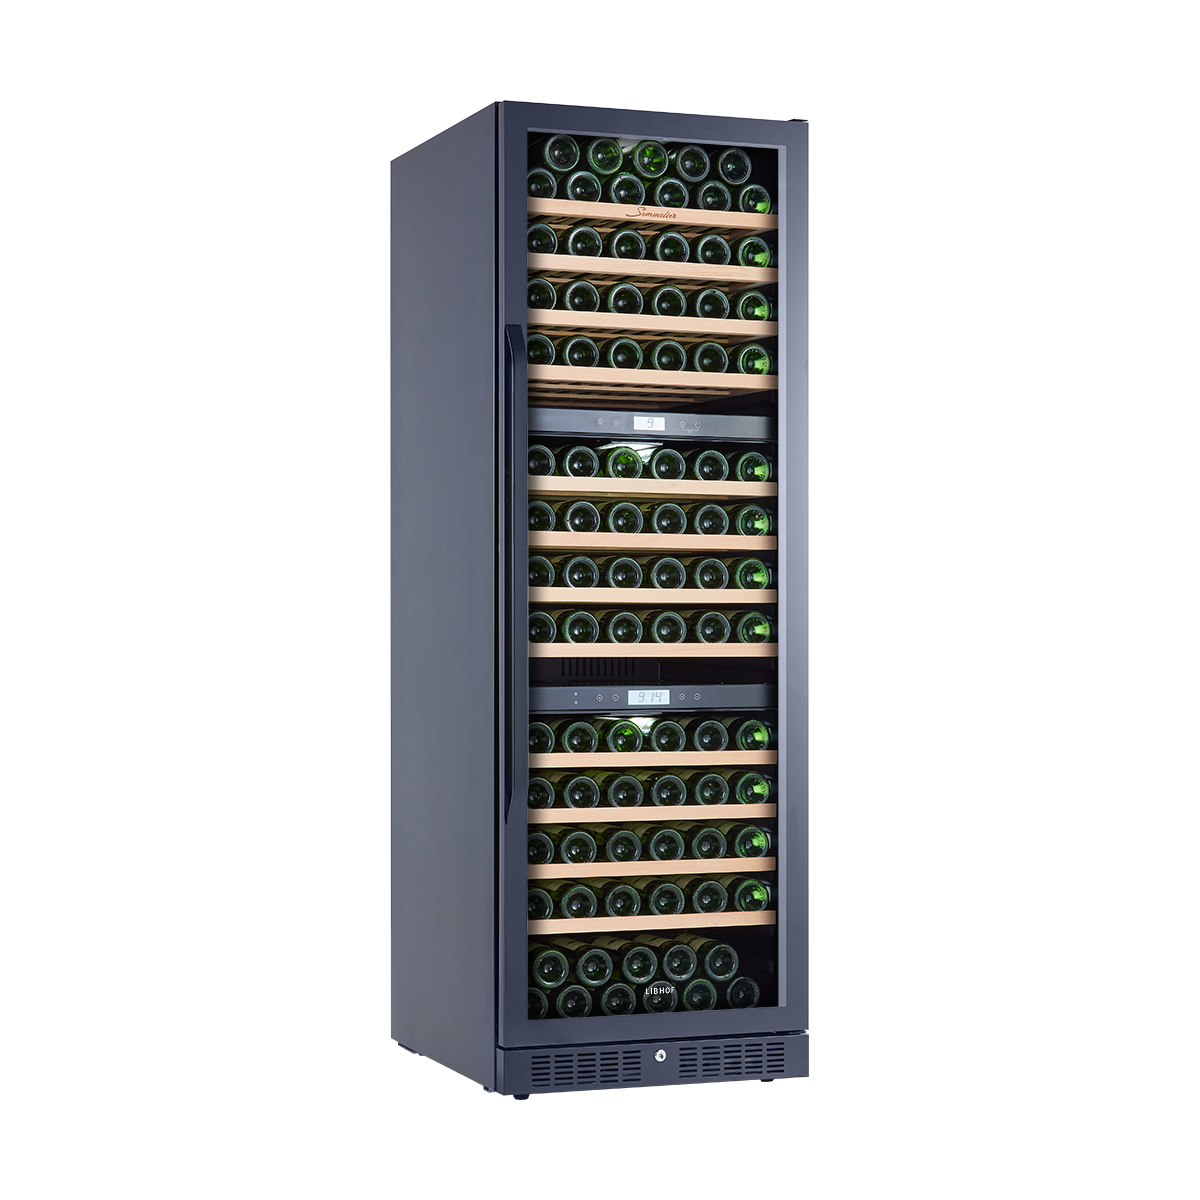 Винный шкаф компрессорный трехзонный Libhof Sommelier SOT-152 Black 595х675х1760мм на 152 бутылки черный встраиваемый/отдельностоящий